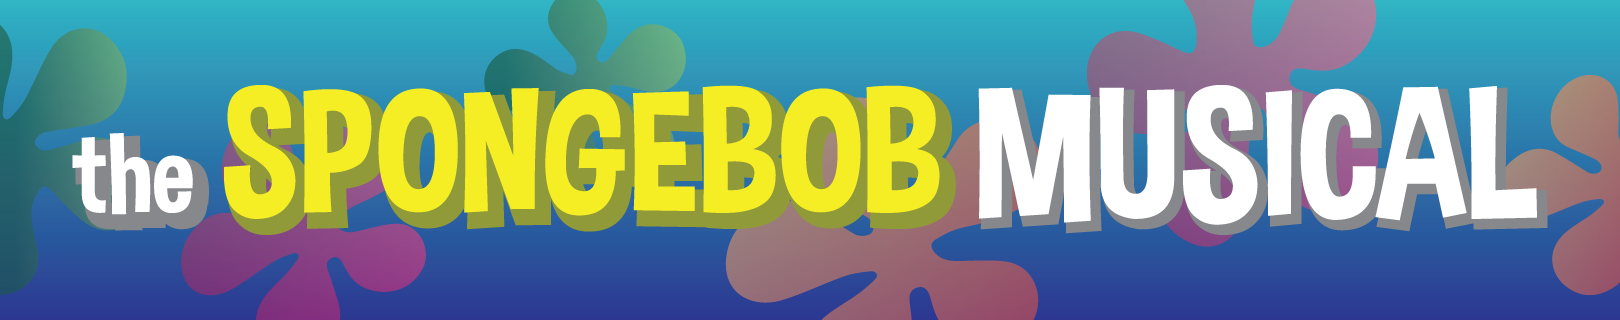 The Spongebob Musical banner